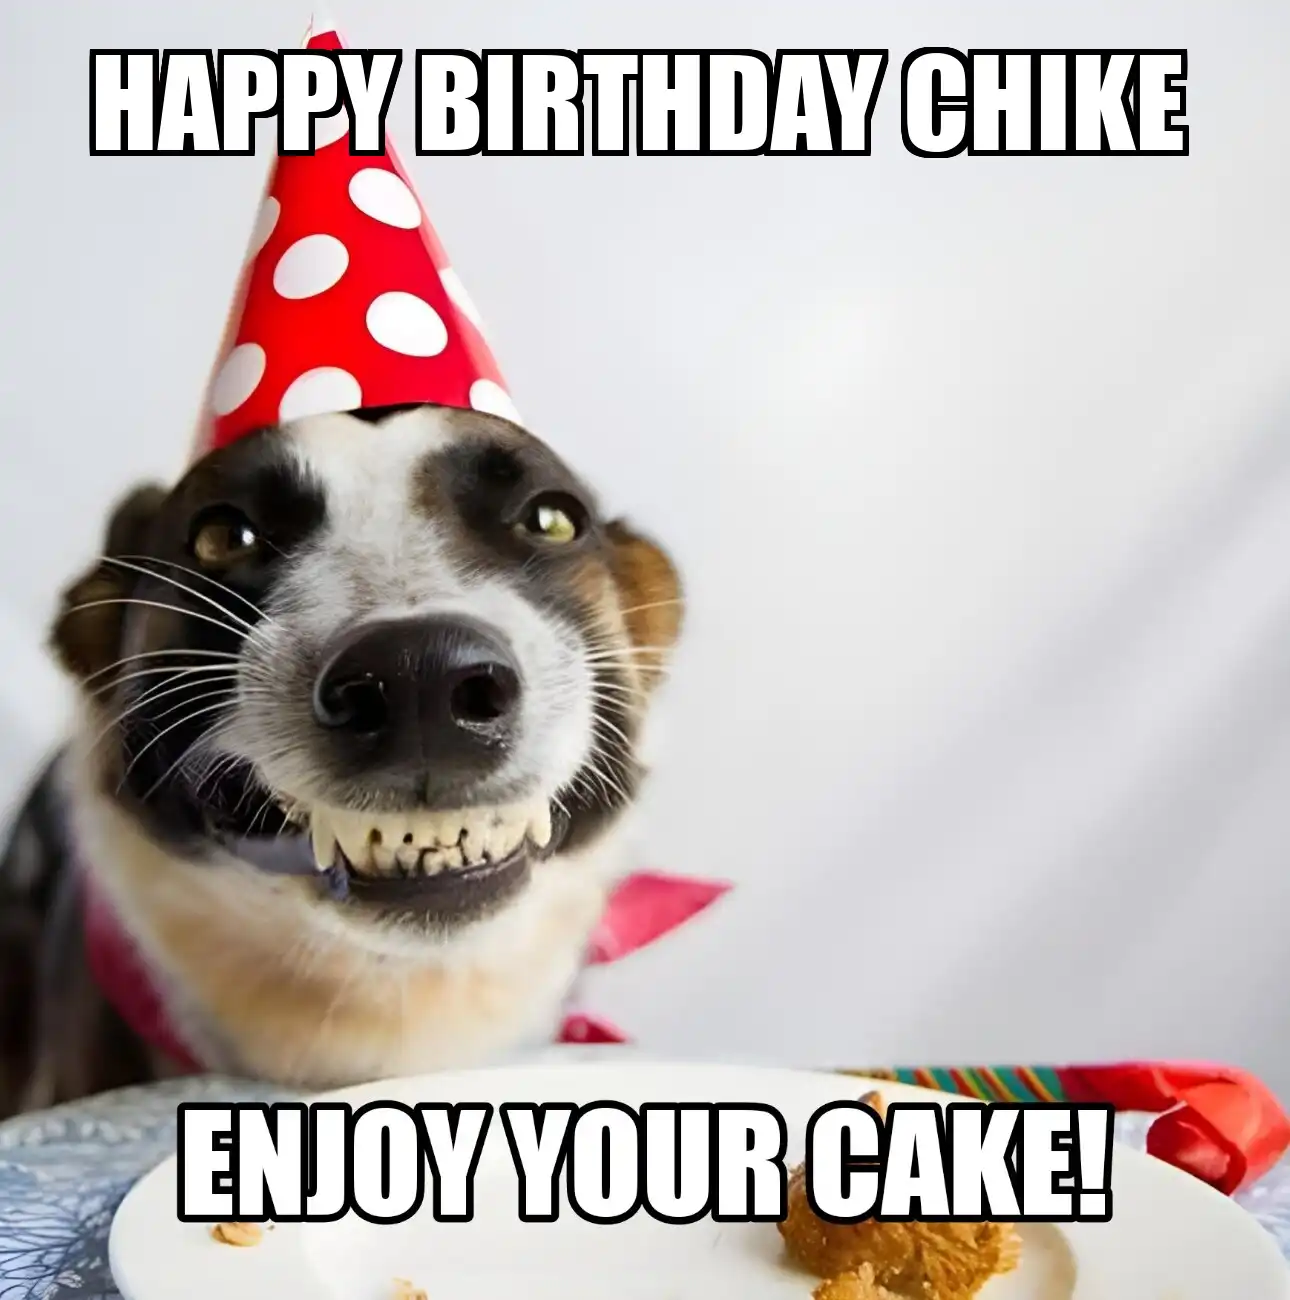 Happy Birthday Chike Enjoy Your Cake Dog Meme